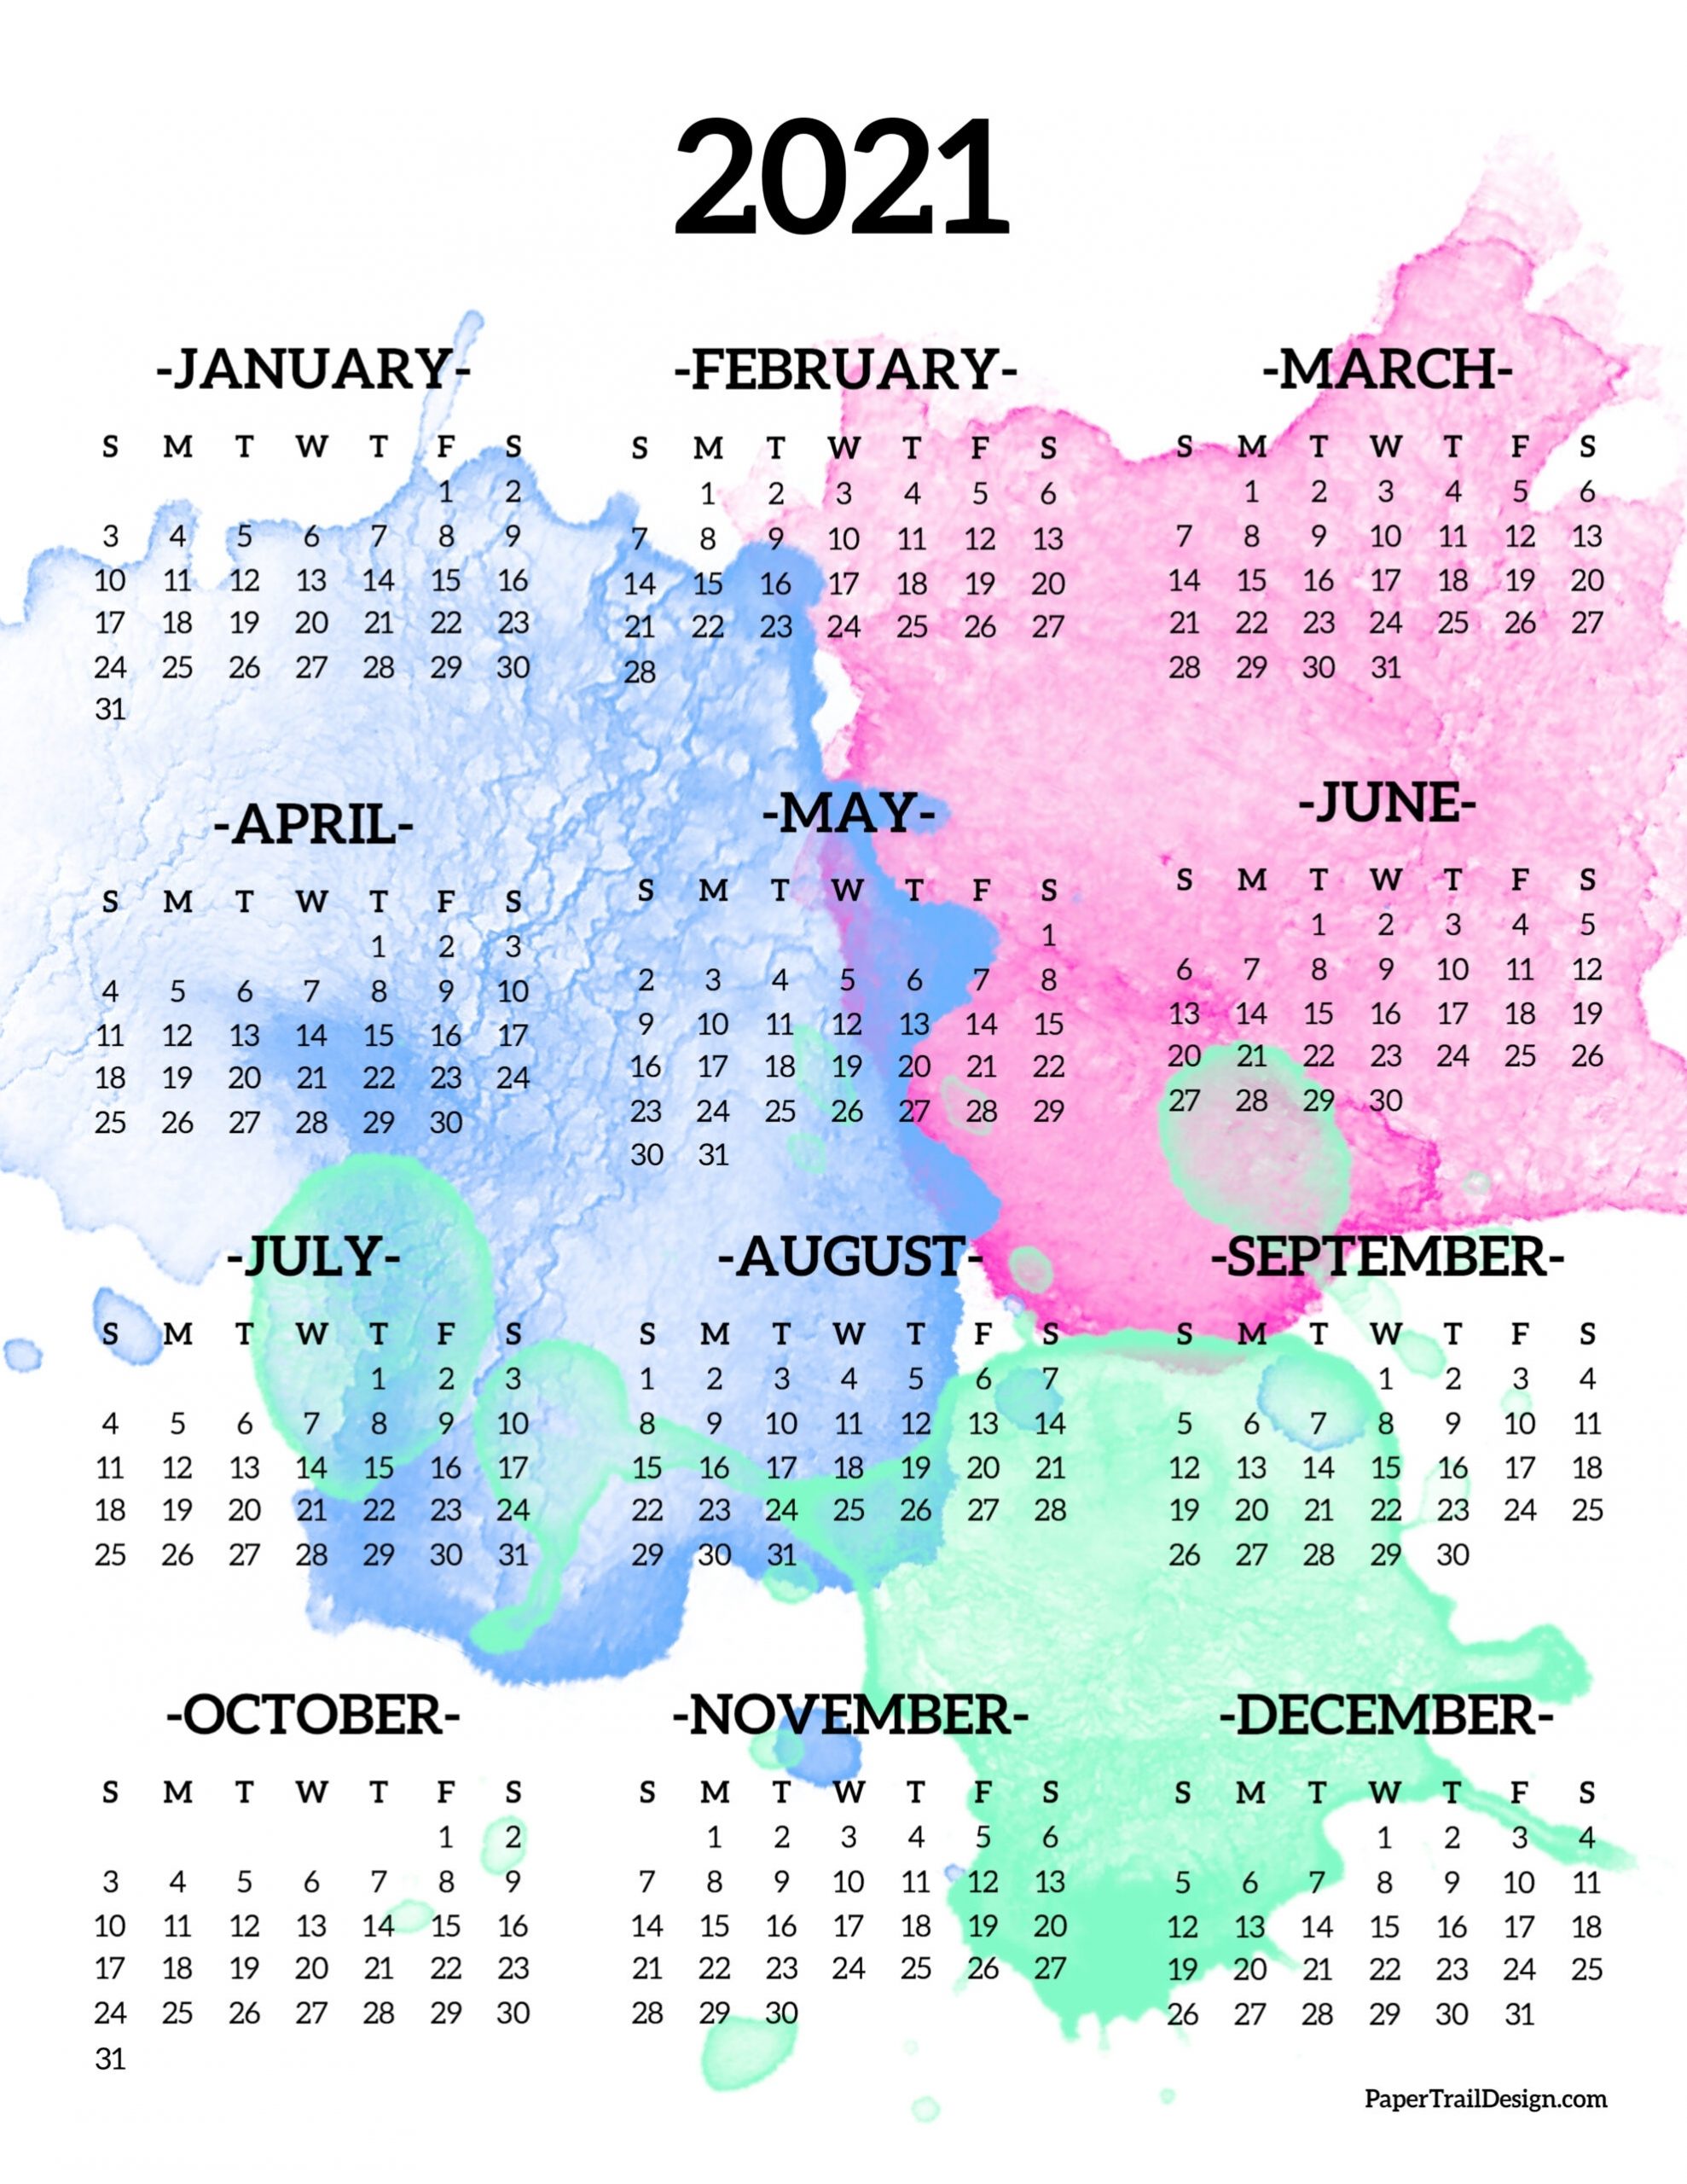 Get Calendar At A Glance 2021